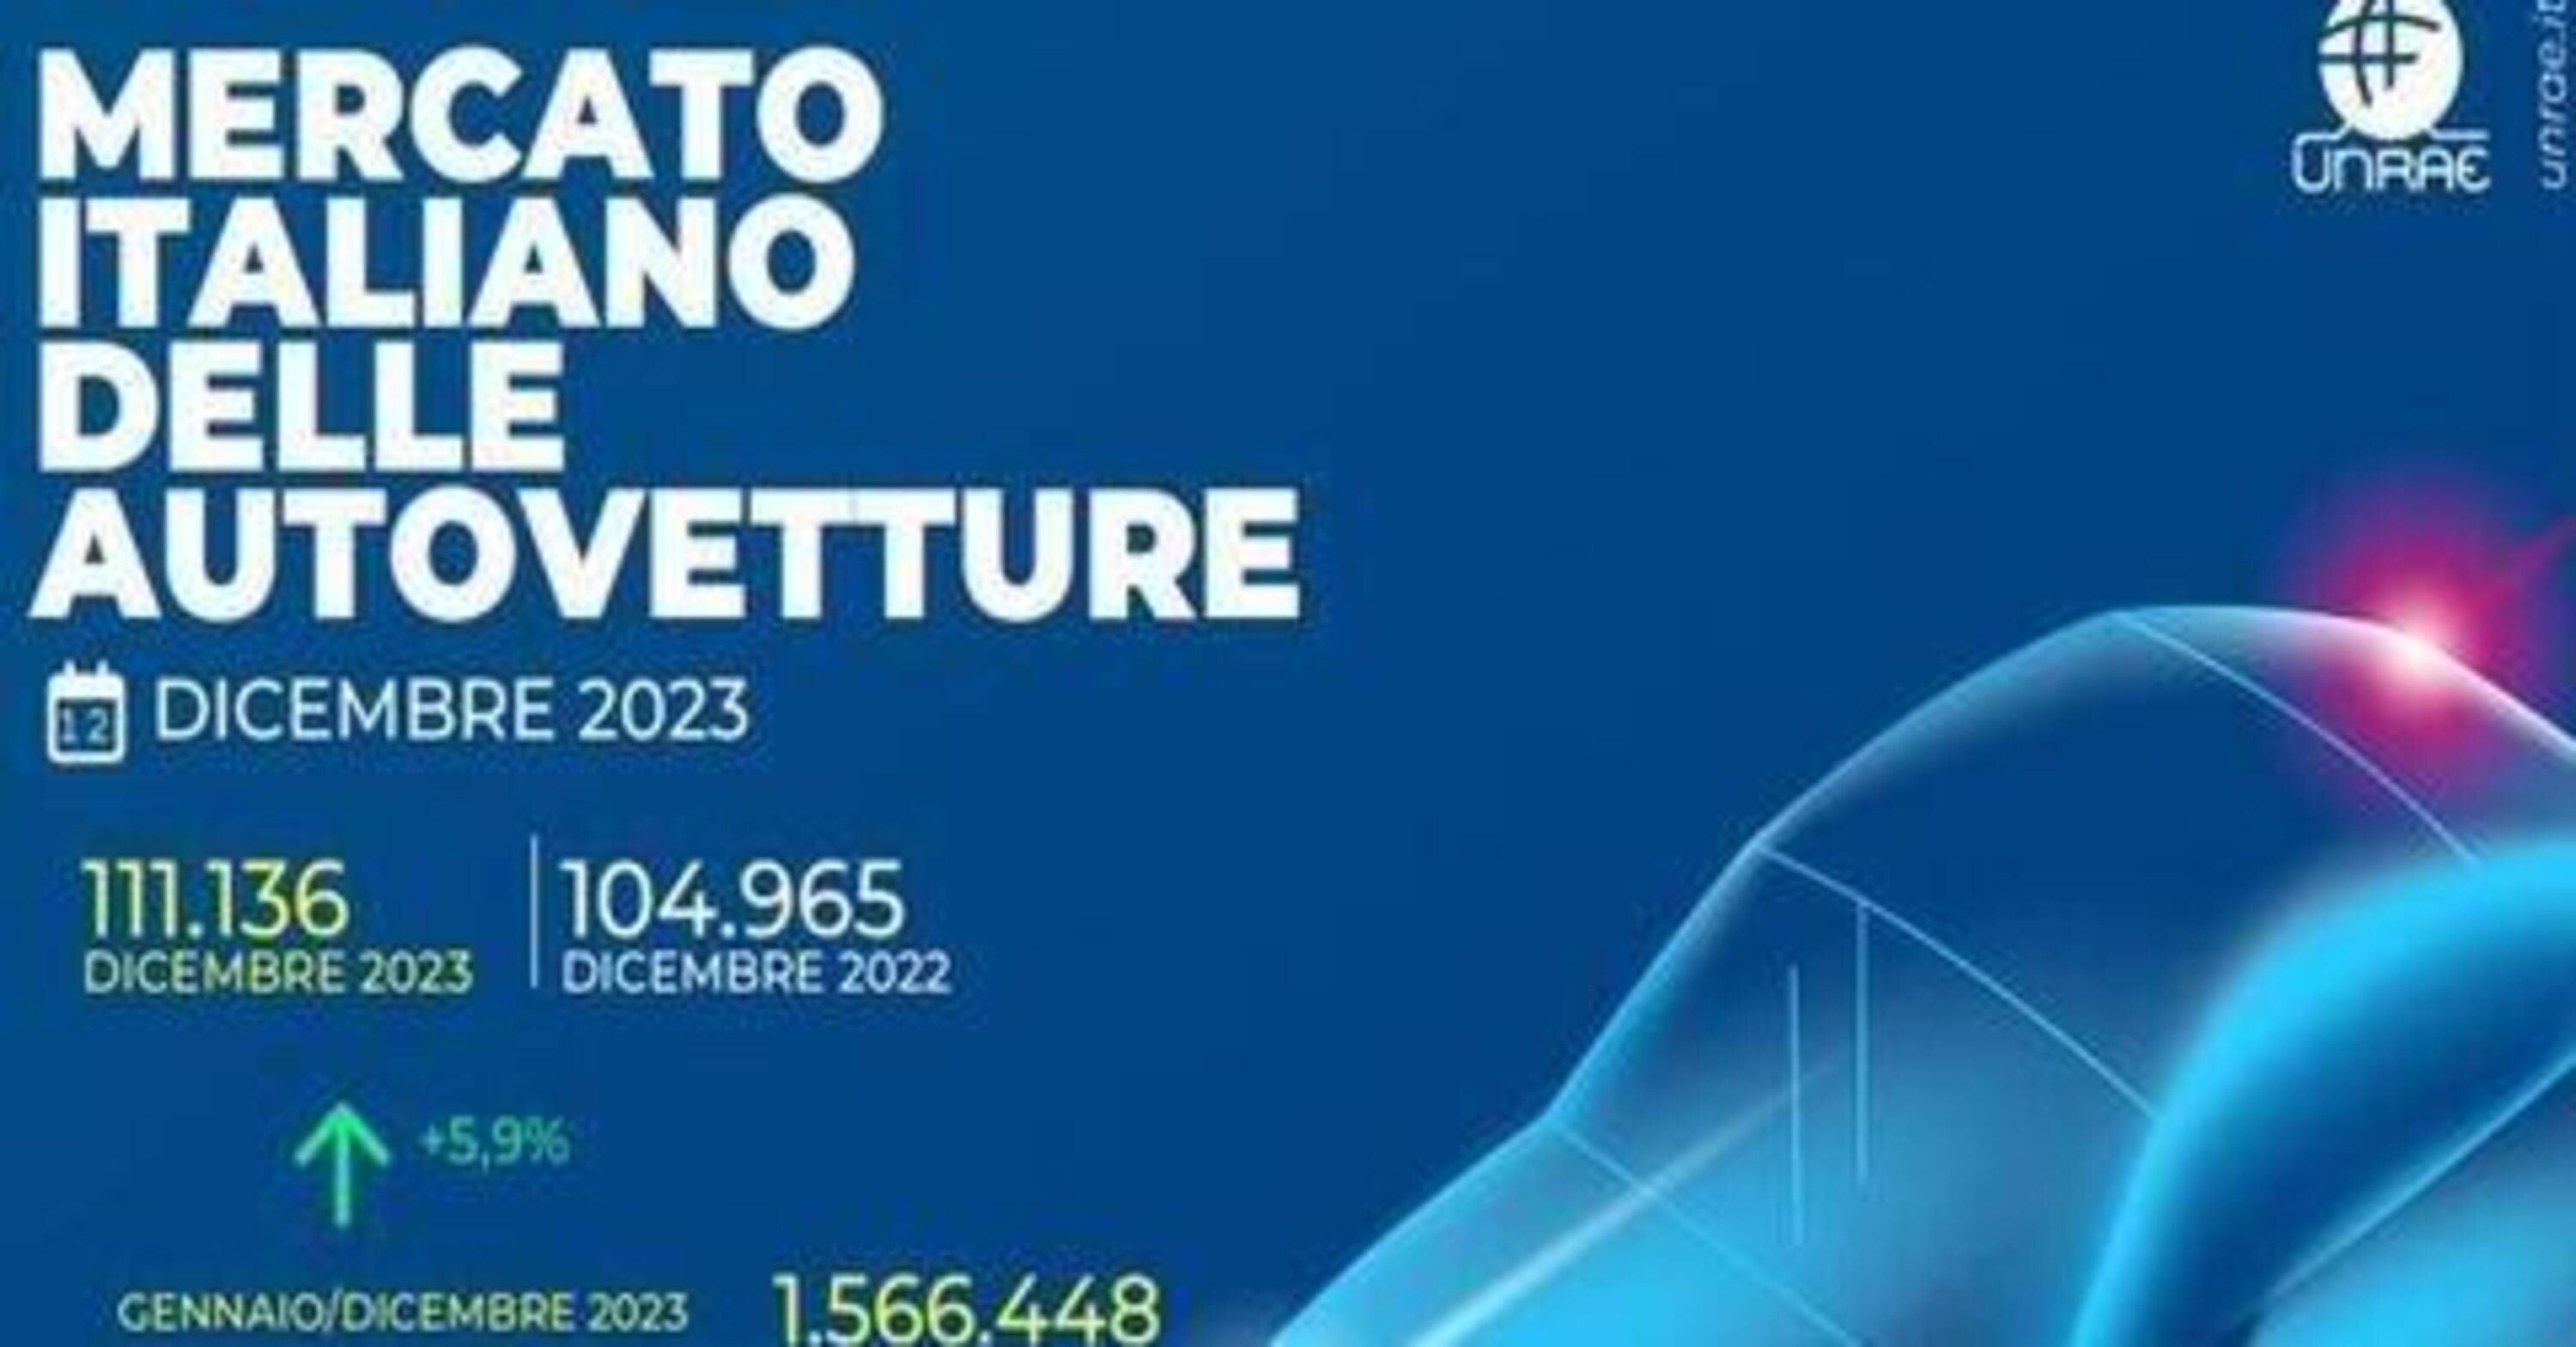 Mercato auto Italia 2023: segnali positivi, mercato in ripresa a quota 1,56 milioni di vendite